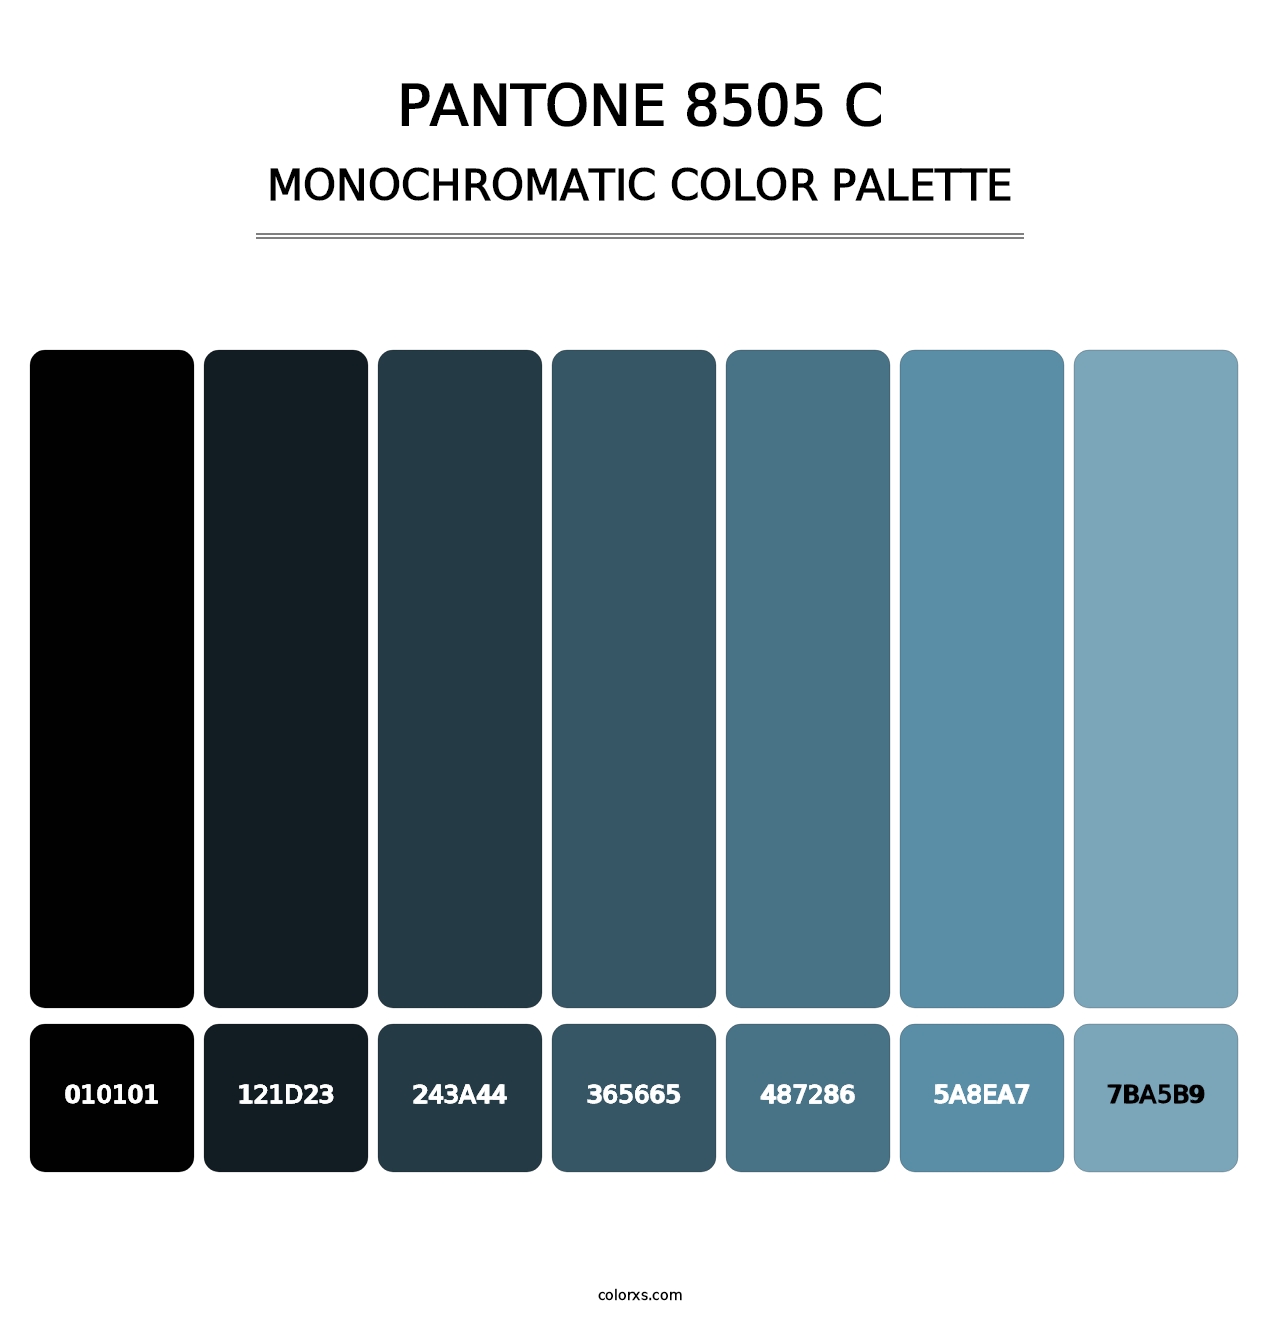 PANTONE 8505 C - Monochromatic Color Palette